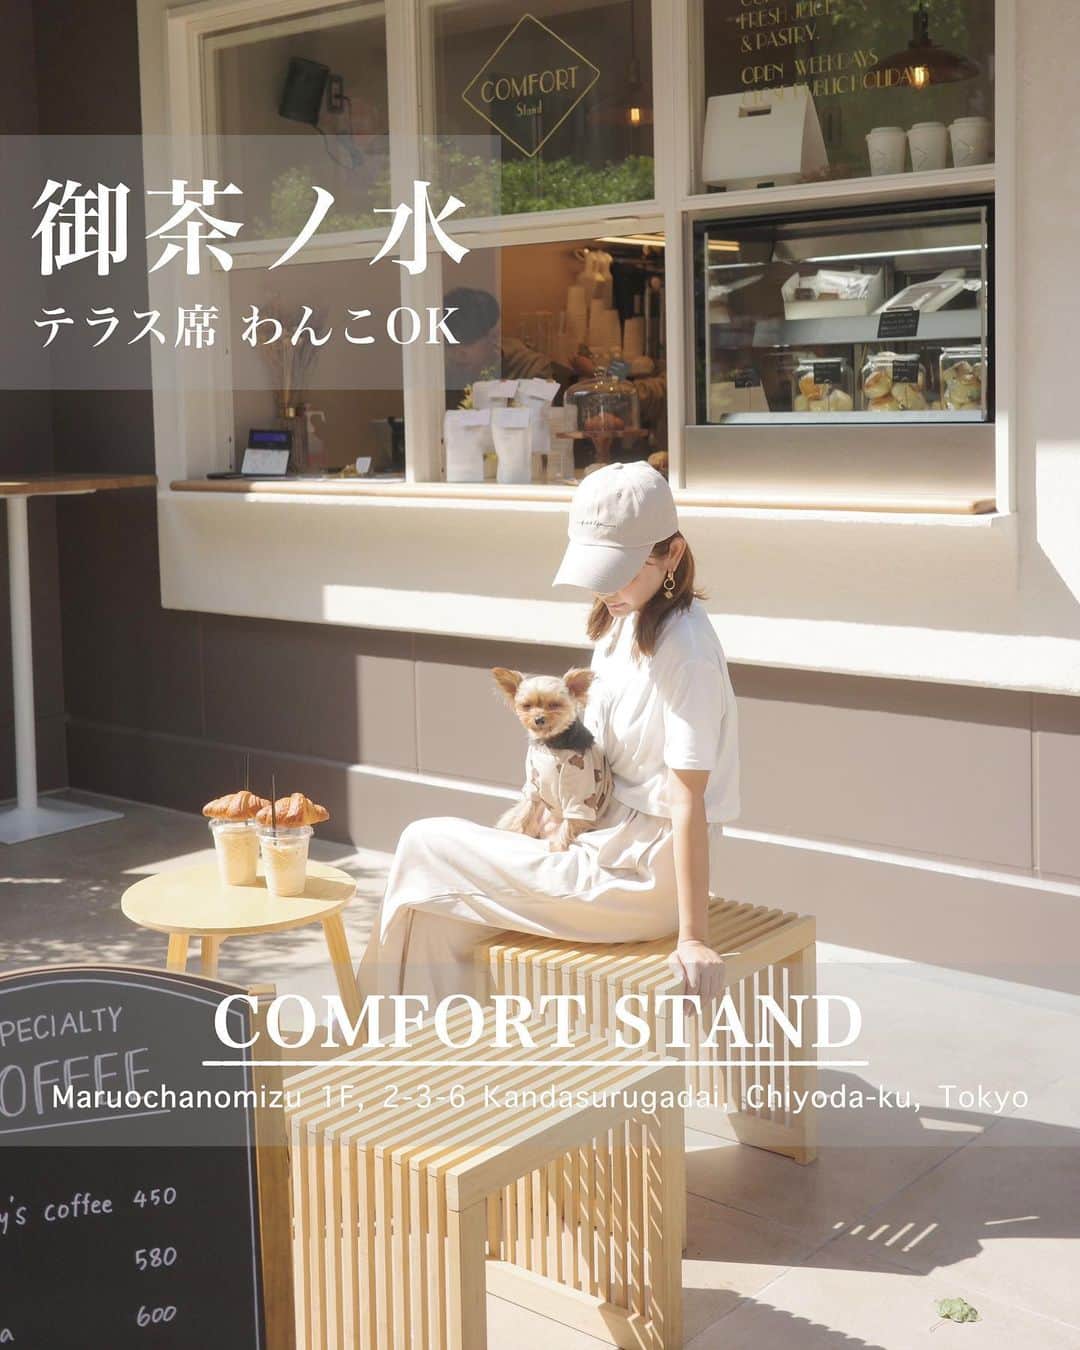 池田沙代のインスタグラム：「🤍🤍🤍  ☕️ ⒸⓄⓂⒻⓄⓇⓉ ⓈⓉⒶⓃⒹ🥐 @comfort_stand_ochanomizu  @comfort_stand_tokyo  #御茶ノ水 テラス席🐕‍🦺ok | #カフェ#コーヒー#クロワッサン  御茶ノ水にあるカフェ🥐 テラス席わんこok☺️  テラス席は2席しかないけど 雰囲気かわいくって好きだった🐶  この日は日差しも気持ちよくて🌱  クロワッサンが美味しかったよ🥐 いろんな種類があったけど プレーンにした🫶  影になるところが少ないから わんこ連れだと天候に左右されるけど 日差し浴びながらも気持ちいいし 是非行ってみてください☀️  午前中の涼しい時間に行って クロワッサン食べたい🥹🤍  店員さん、わんこフレンドリーで 優しかったです🙌🏻  周りにわんこokなカフェもあるし カフェ巡りの日にまた行きたい☺️🫶  ____ ㅤㅤ  🥐☕️ ⒸⓄⓂⒻⓄⓇⓉ ⓈⓉⒶⓃⒹ @comfort_stand_ochanomizu  @comfort_stand_tokyo   ▫️ 東京都千代田区神田駿河台2-3-6  　　circles御茶ノ水 1F  ▫️予約不可 ▫️営業時間: 10:00～16:00 ▫️テラス席🐕‍🦺ok ____  最新の営業時間などはお店のSNSなどで チェックしてから行ってみてください🤍  #ぴのさんカフェ#店内犬ok#犬と行けるカフェ#犬と行けるお店#ペット同伴可#犬同伴#犬同伴可#犬とカフェ#ワンコとカフェ#東京カフェ#犬okカフェ#テラス席ワンコok#テラス席わんこok#ペットokカフェ#犬とおでかけ#犬とお出掛け#テラス席わんこok #テラス席わんこｏｋカフェ#御茶ノ水ランチ#御茶ノ水カフェ#さよぴの#モノトーンカフェ#韓国カフェ巡り」